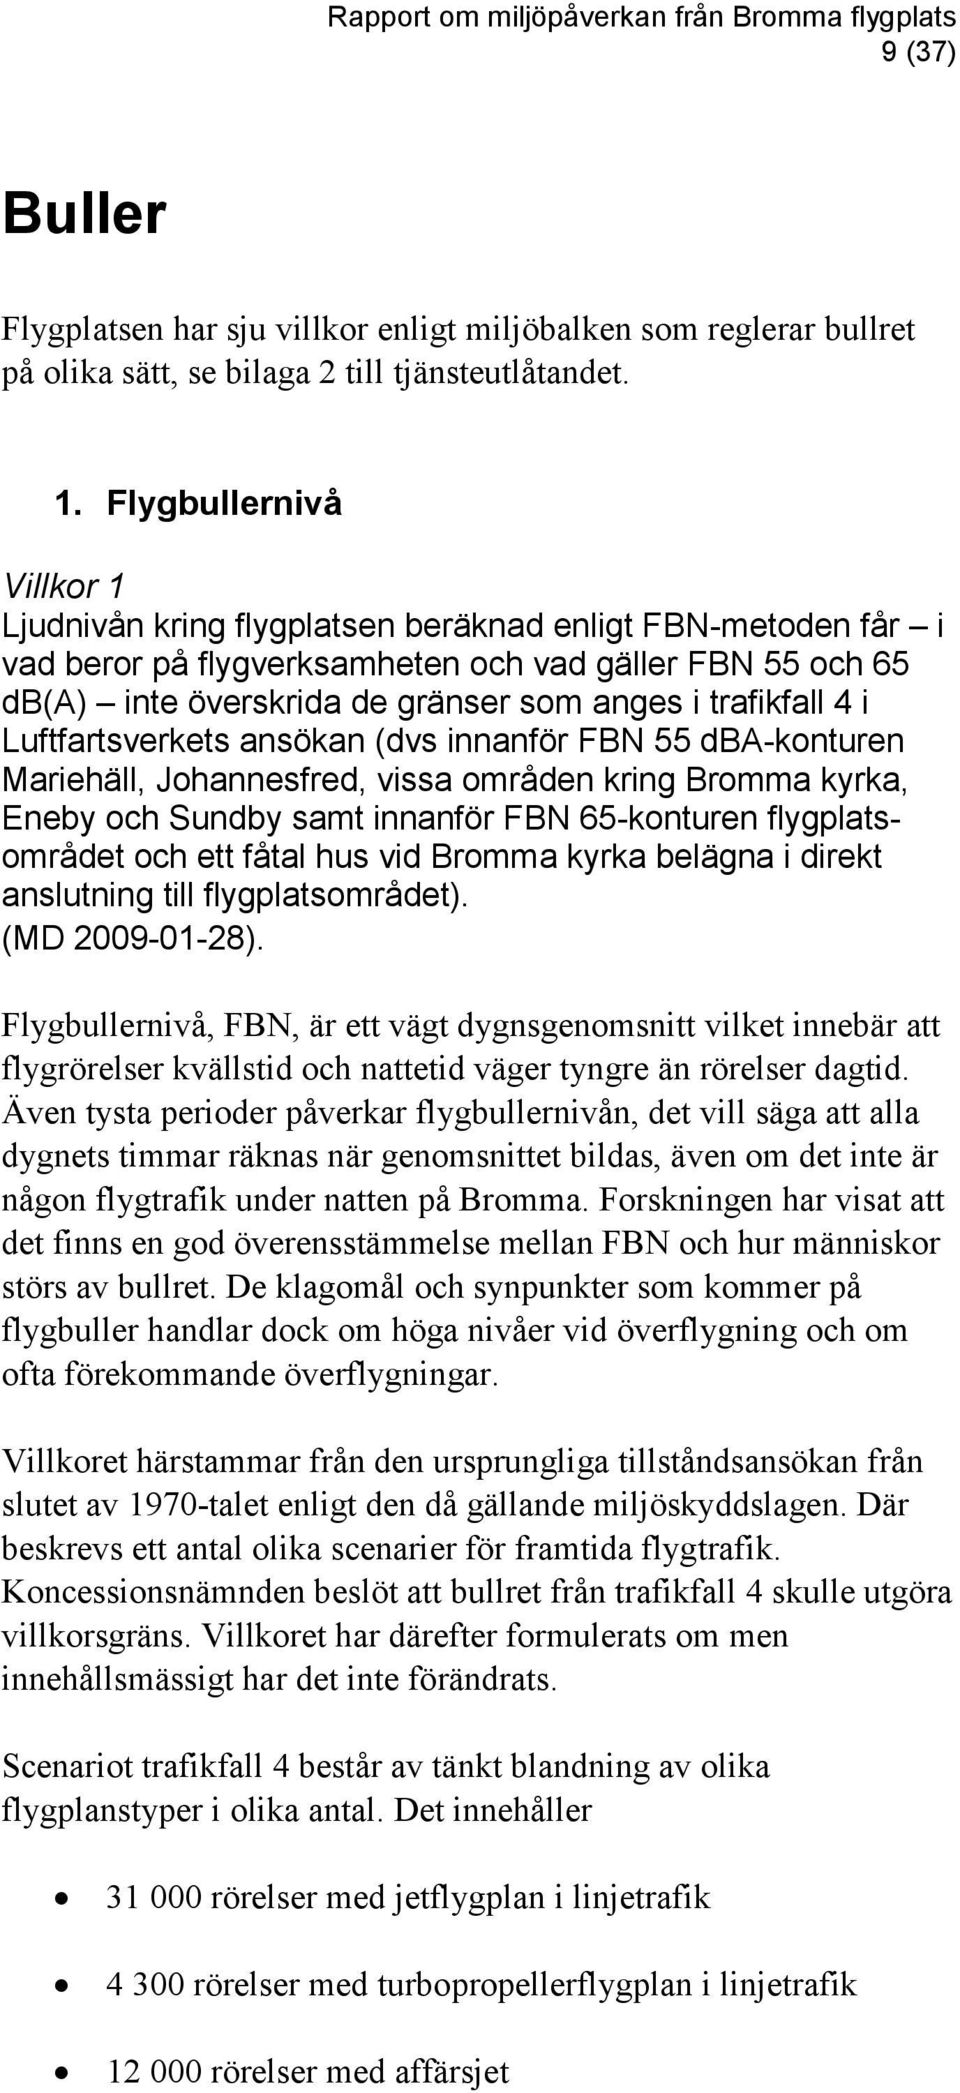 trafikfall 4 i Luftfartsverkets ansökan (dvs innanför FBN 55 dba-konturen Mariehäll, Johannesfred, vissa områden kring Bromma kyrka, Eneby och Sundby samt innanför FBN 65-konturen flygplatsområdet